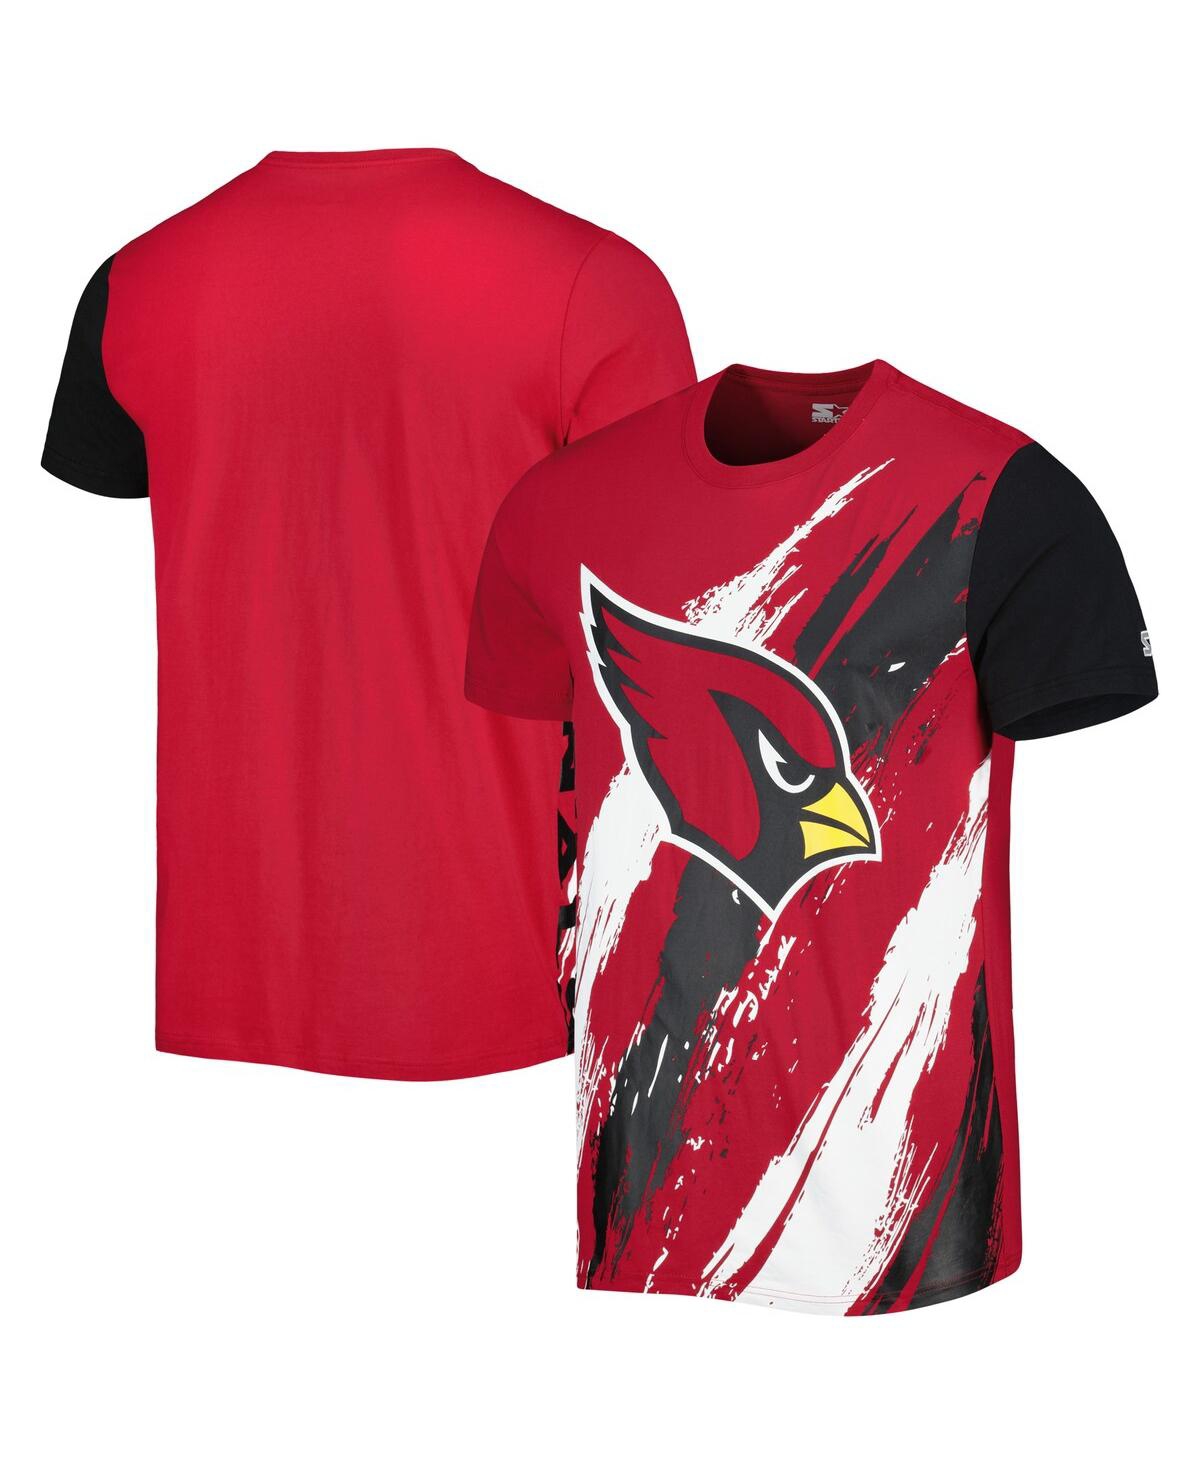 Men's Starter Cardinal Arizona Cardinals Extreme Defender T-shirt - Cardinal